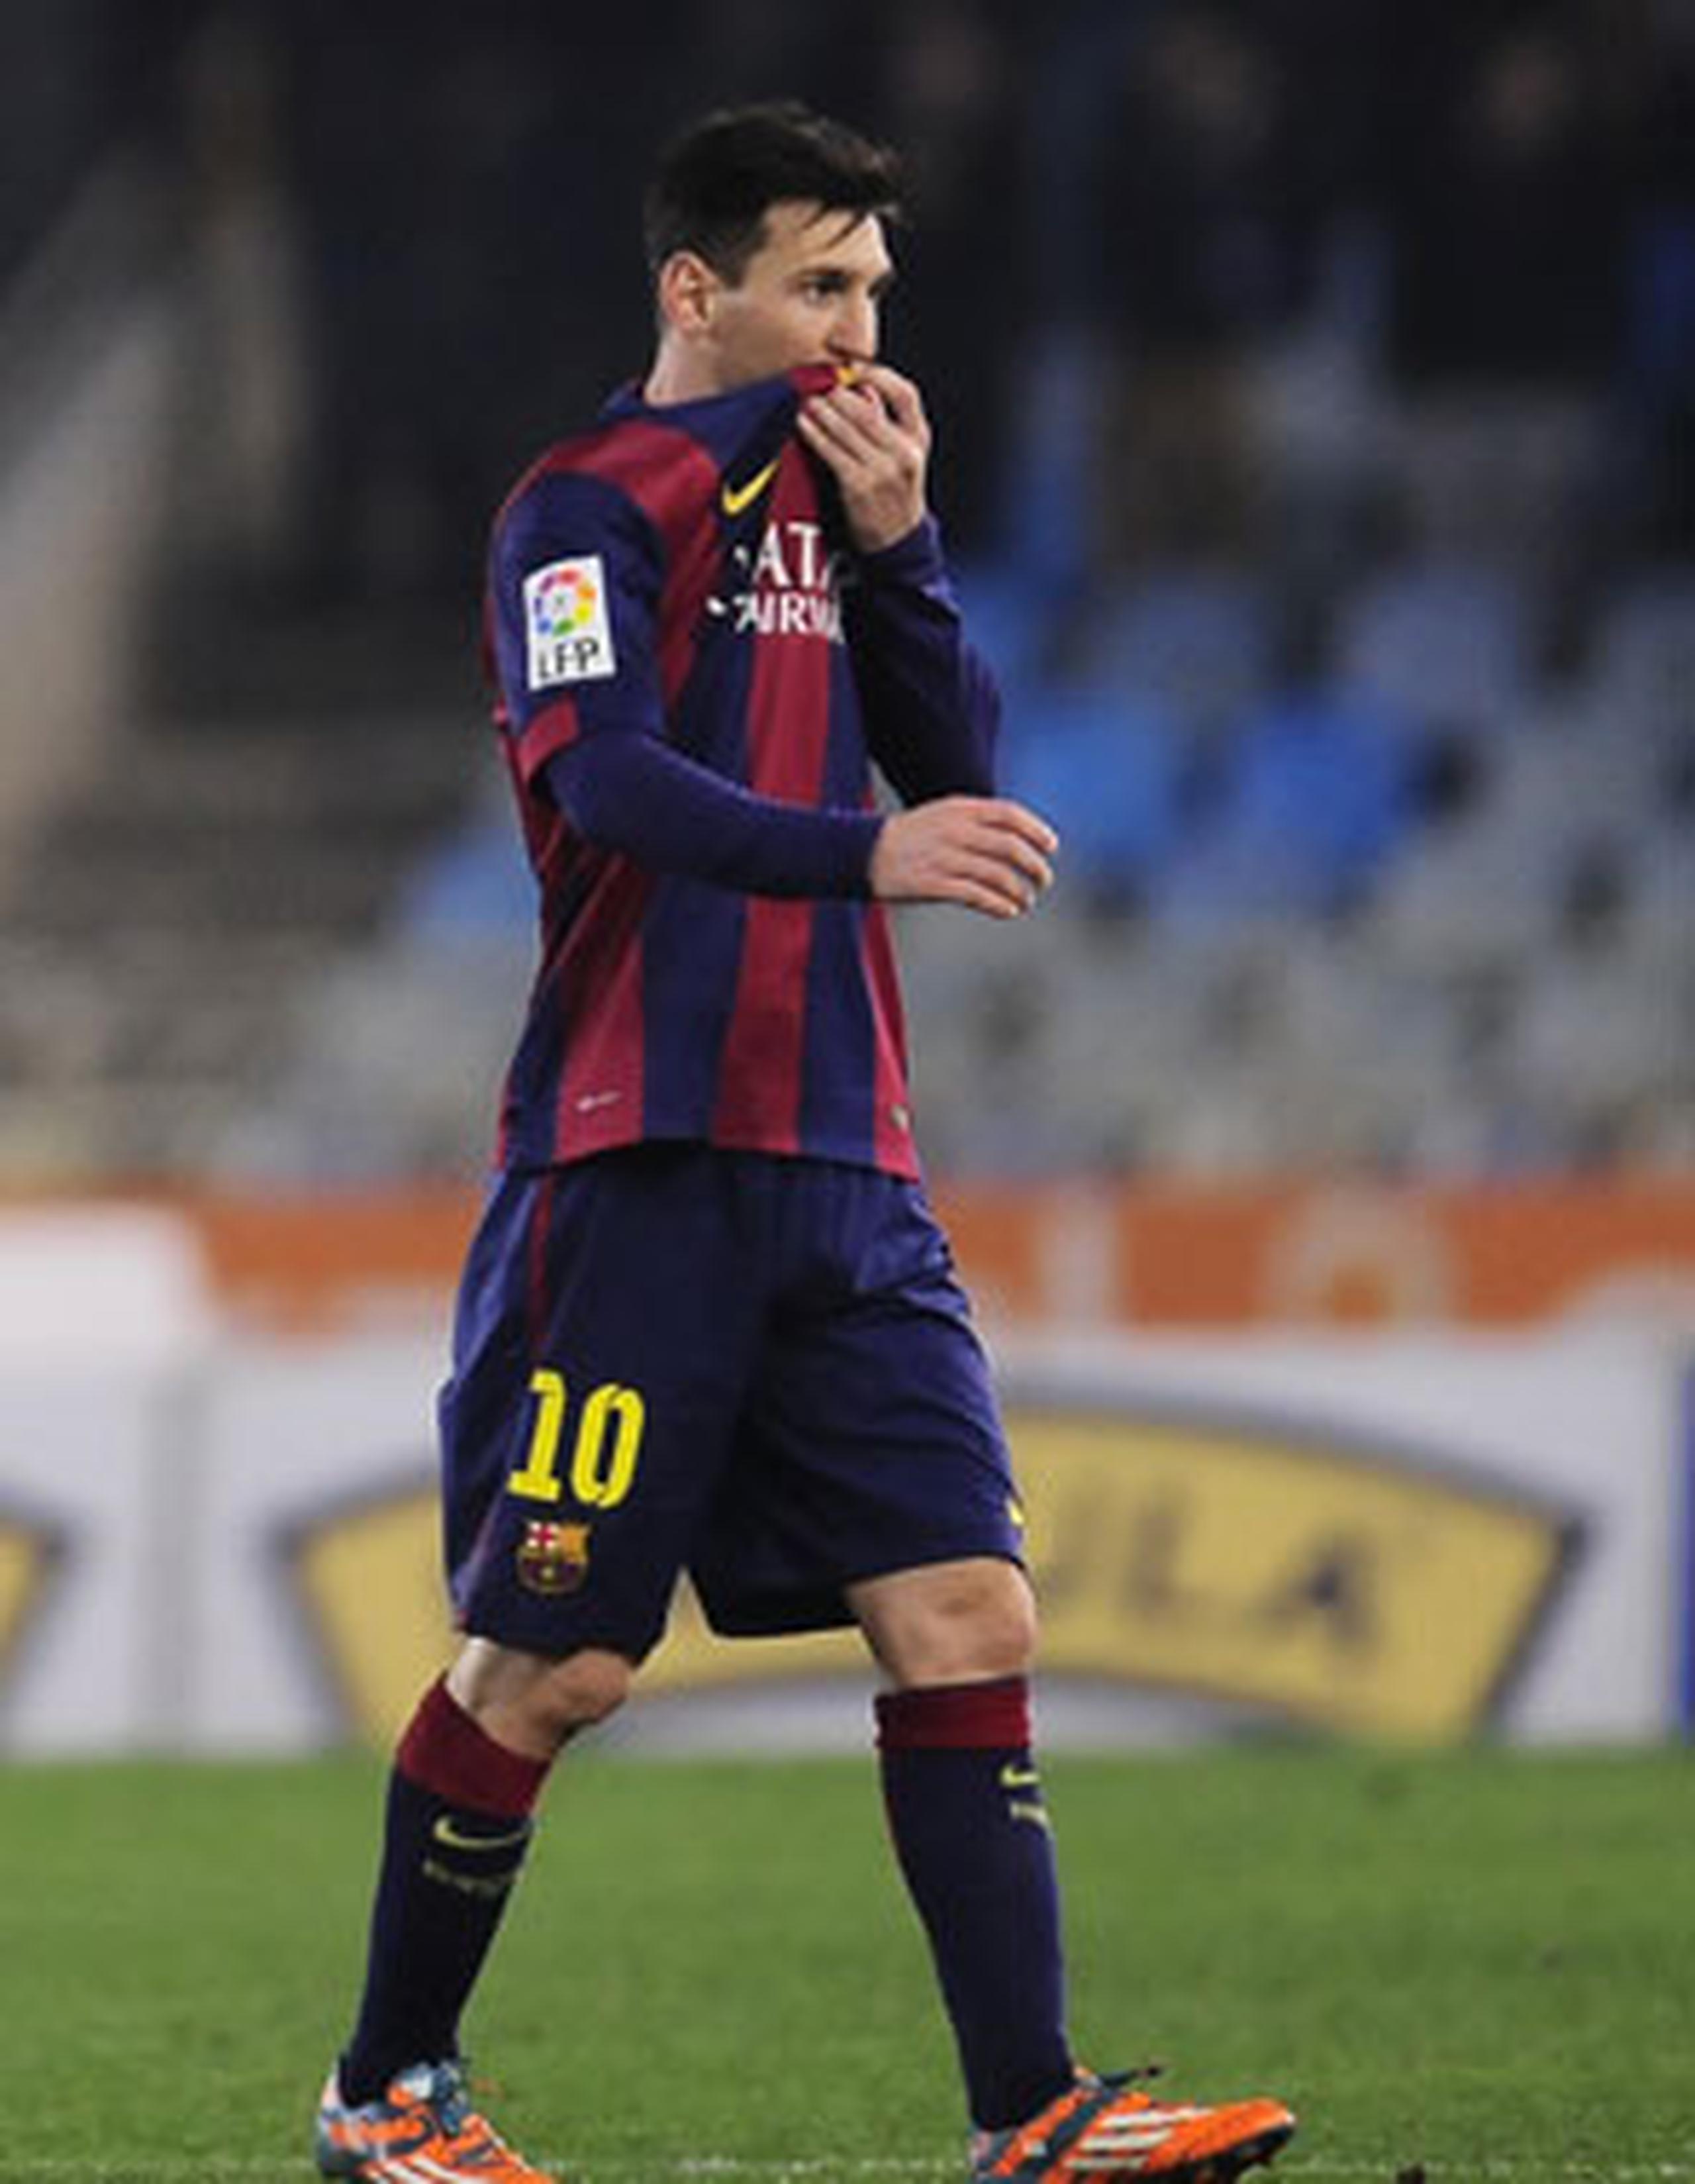 La prensa internacional comienza a señalar que Messi ya empieza a evaluar la idea de dejar el Barcelona. (Archivo / AP)